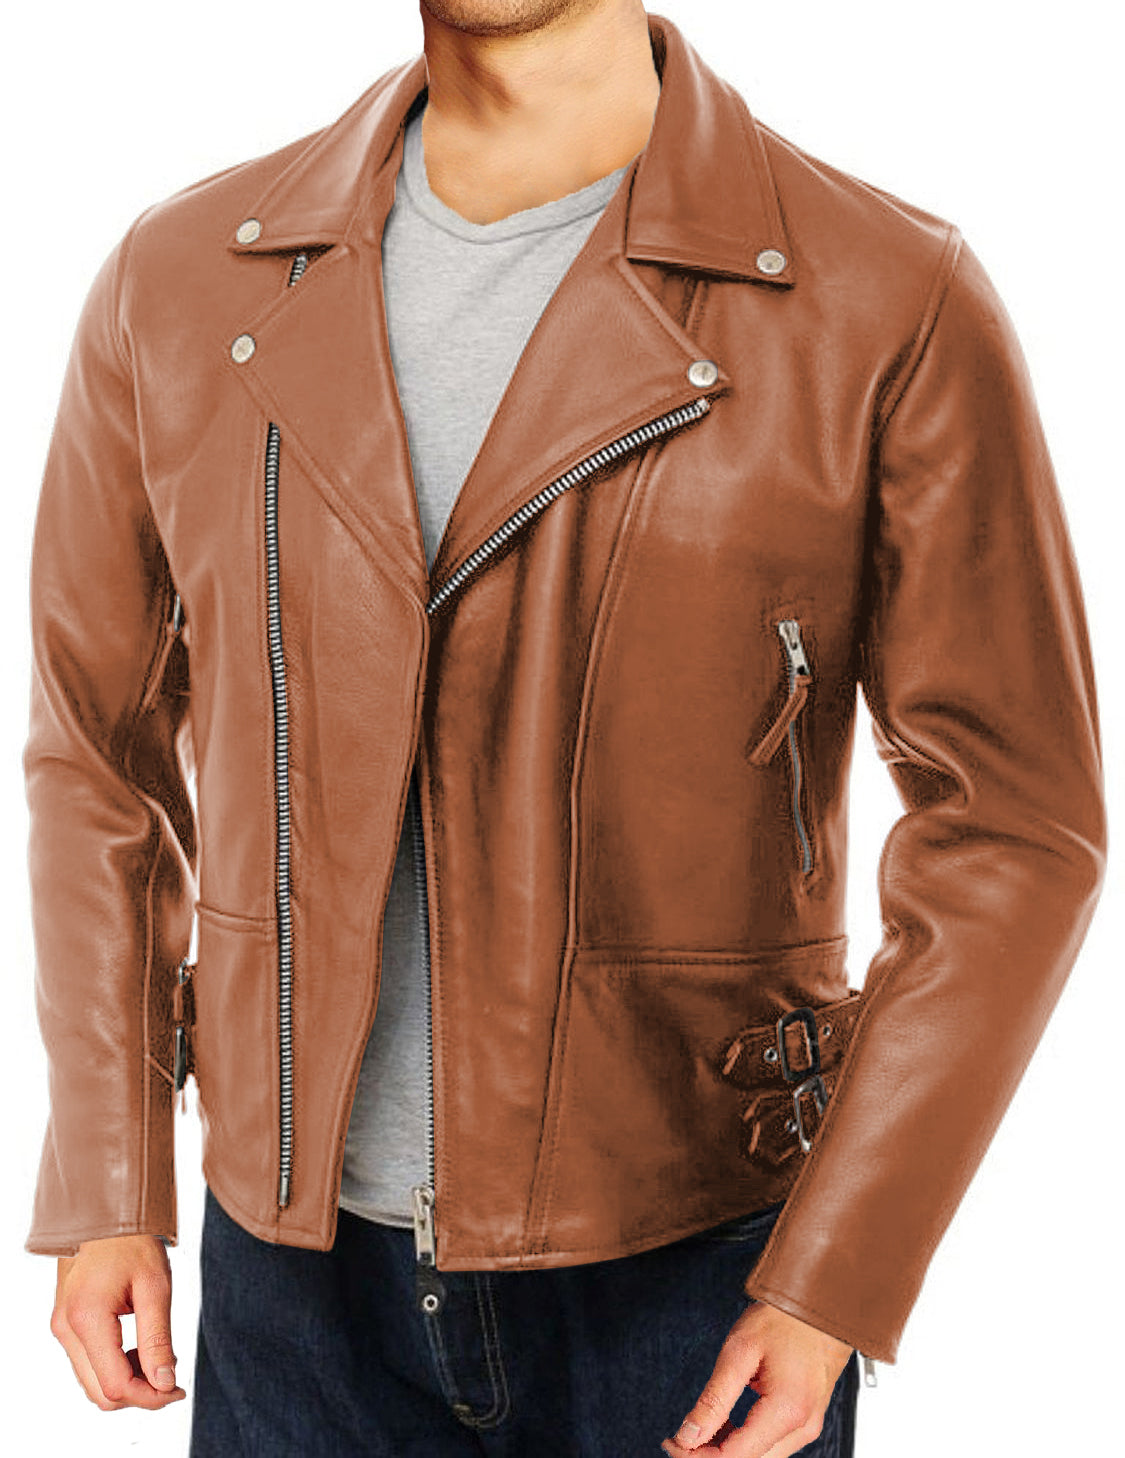 Leather Jackets Hub Mens Genuine Lambskin Leather Jacket (Black, Double Rider Jacket) - 1501104